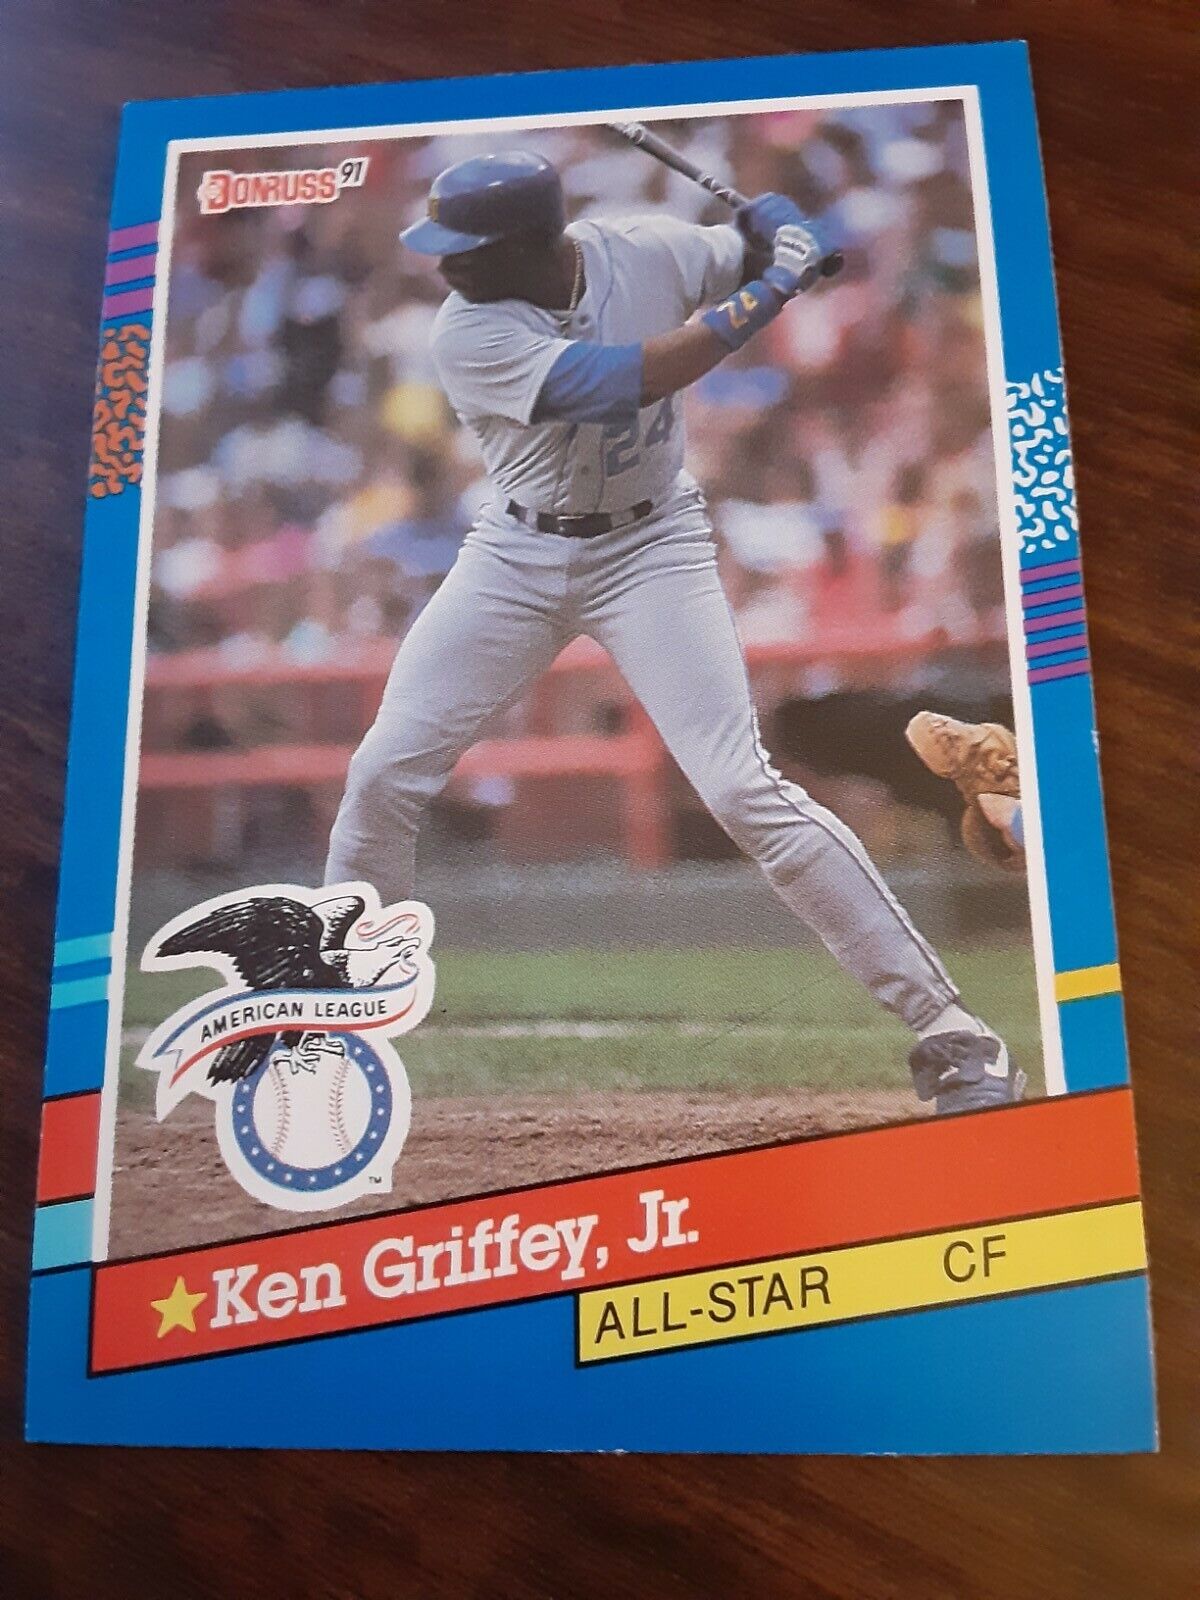 1991 Donruss Ken Griffey, JR. All American League All Stare CF Baseball Card